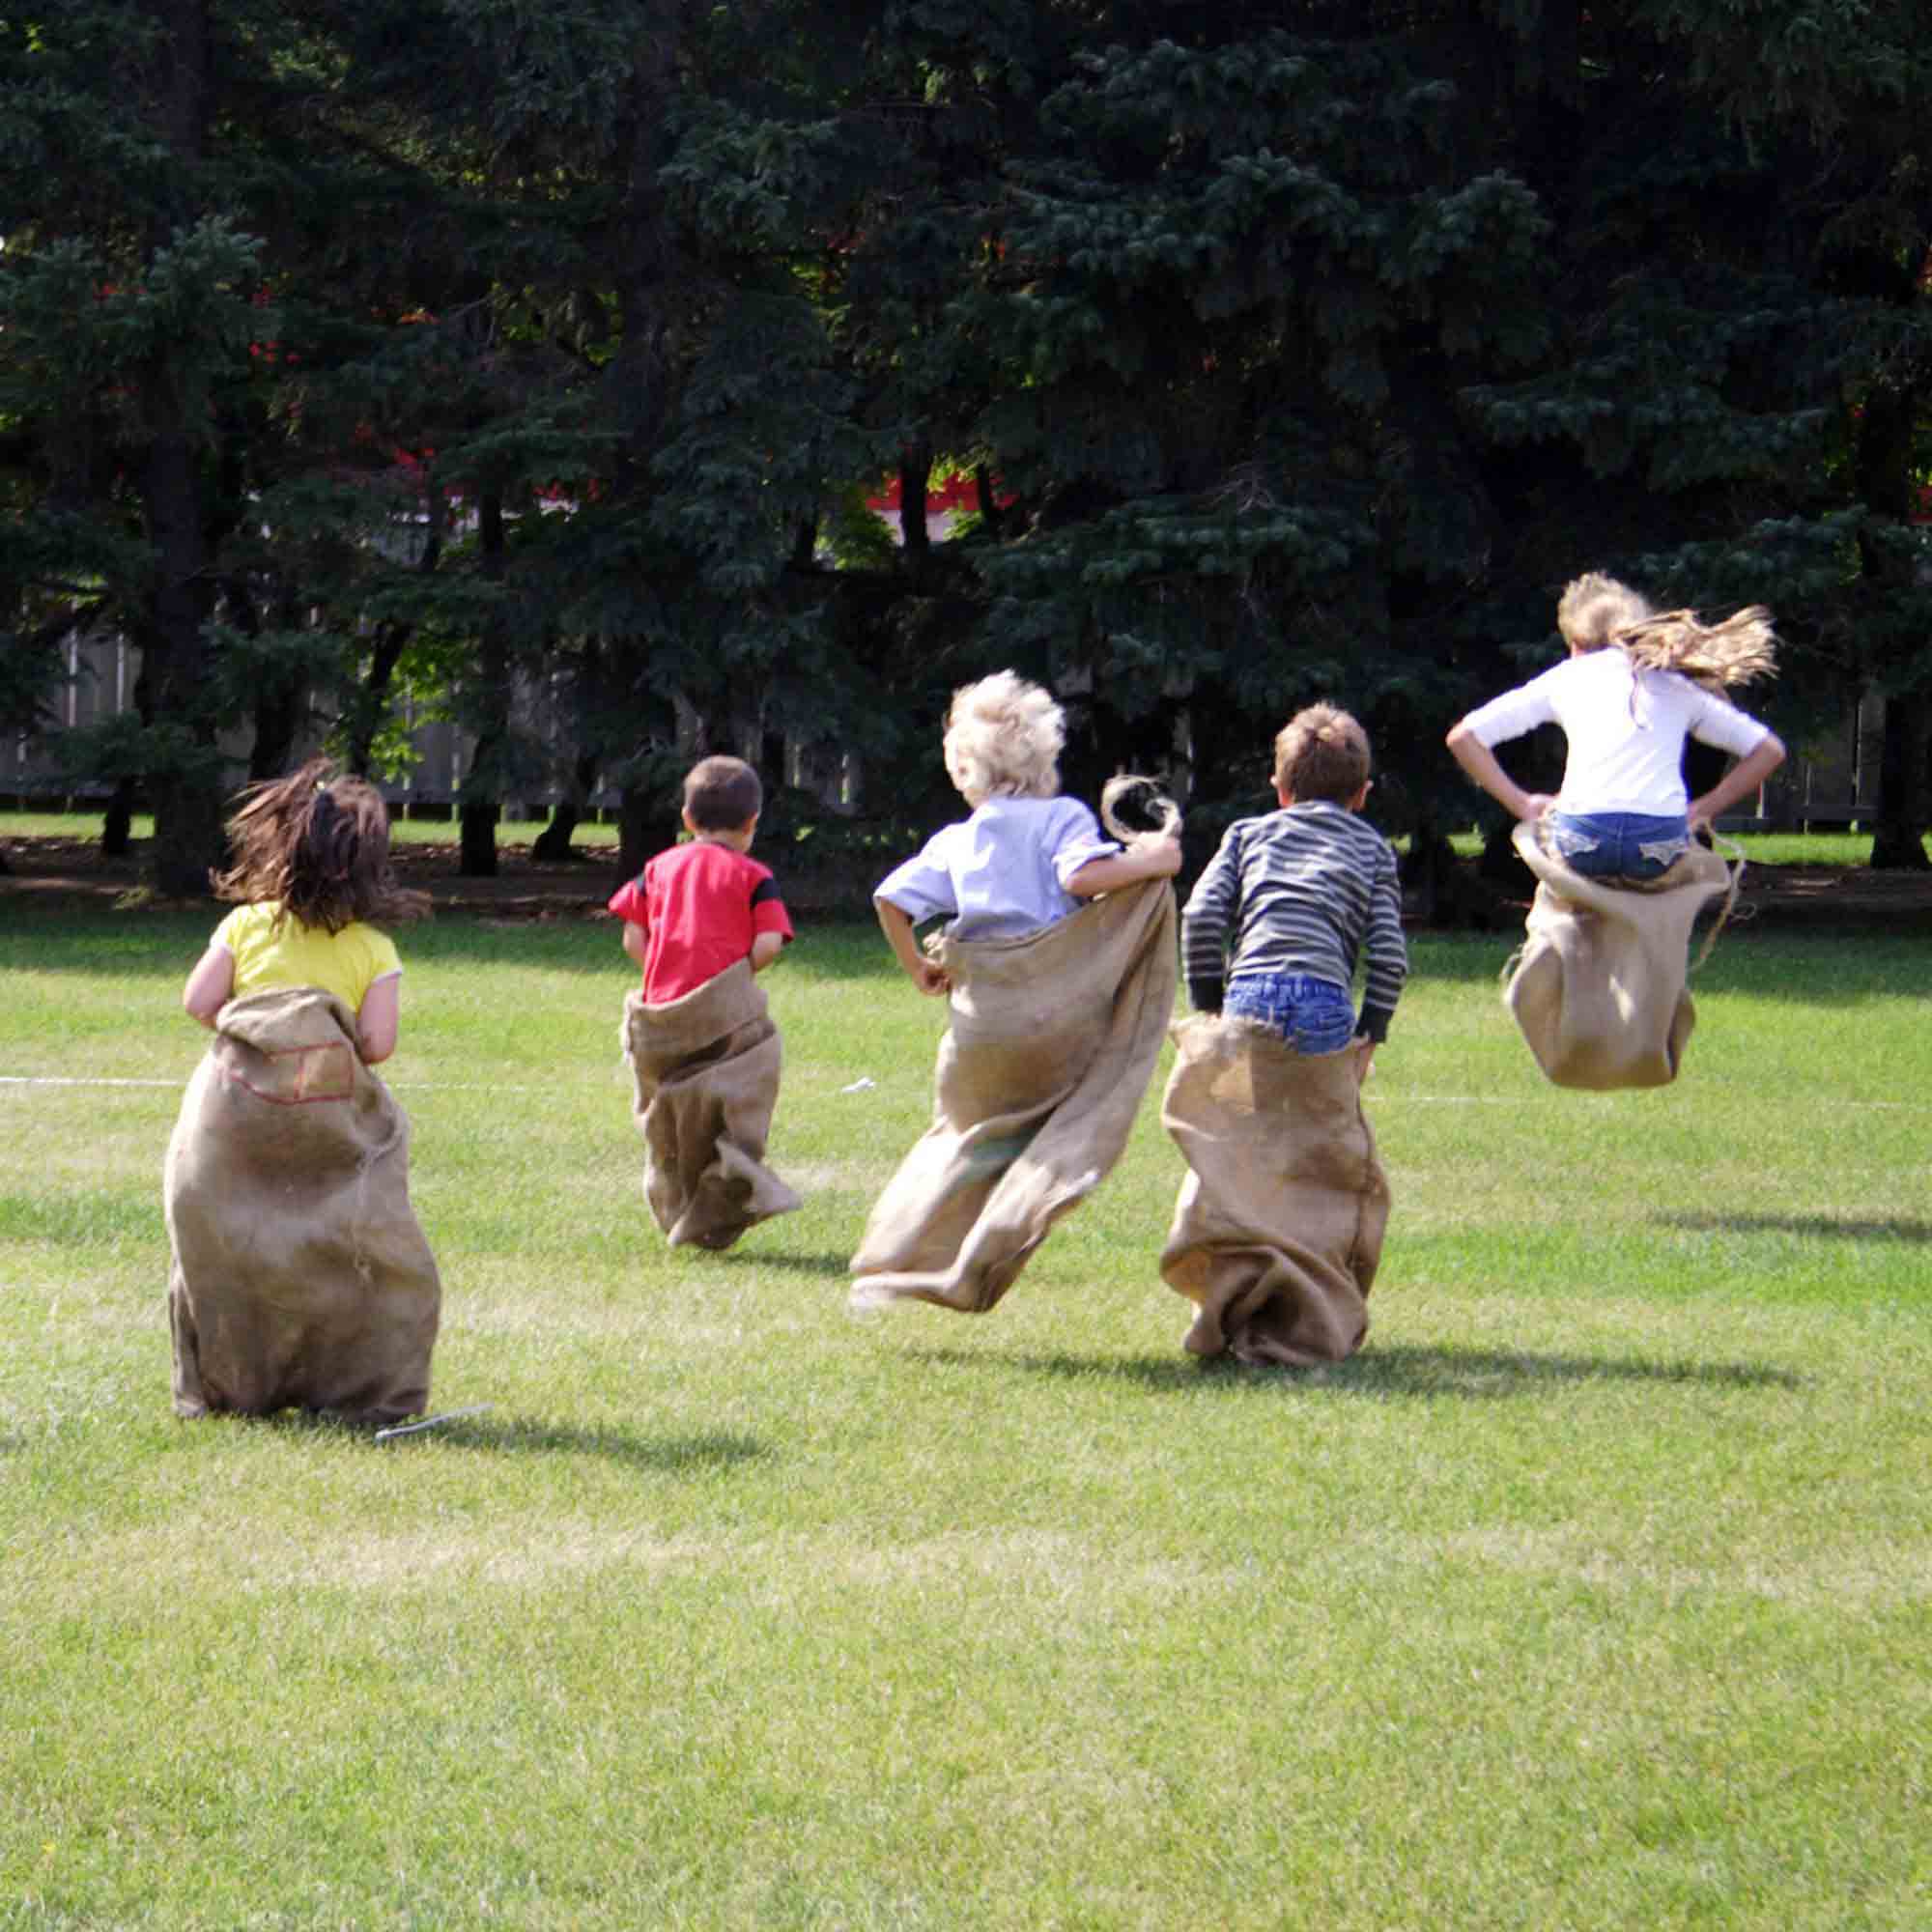 Children hopping inside sacks to complete sack race relay